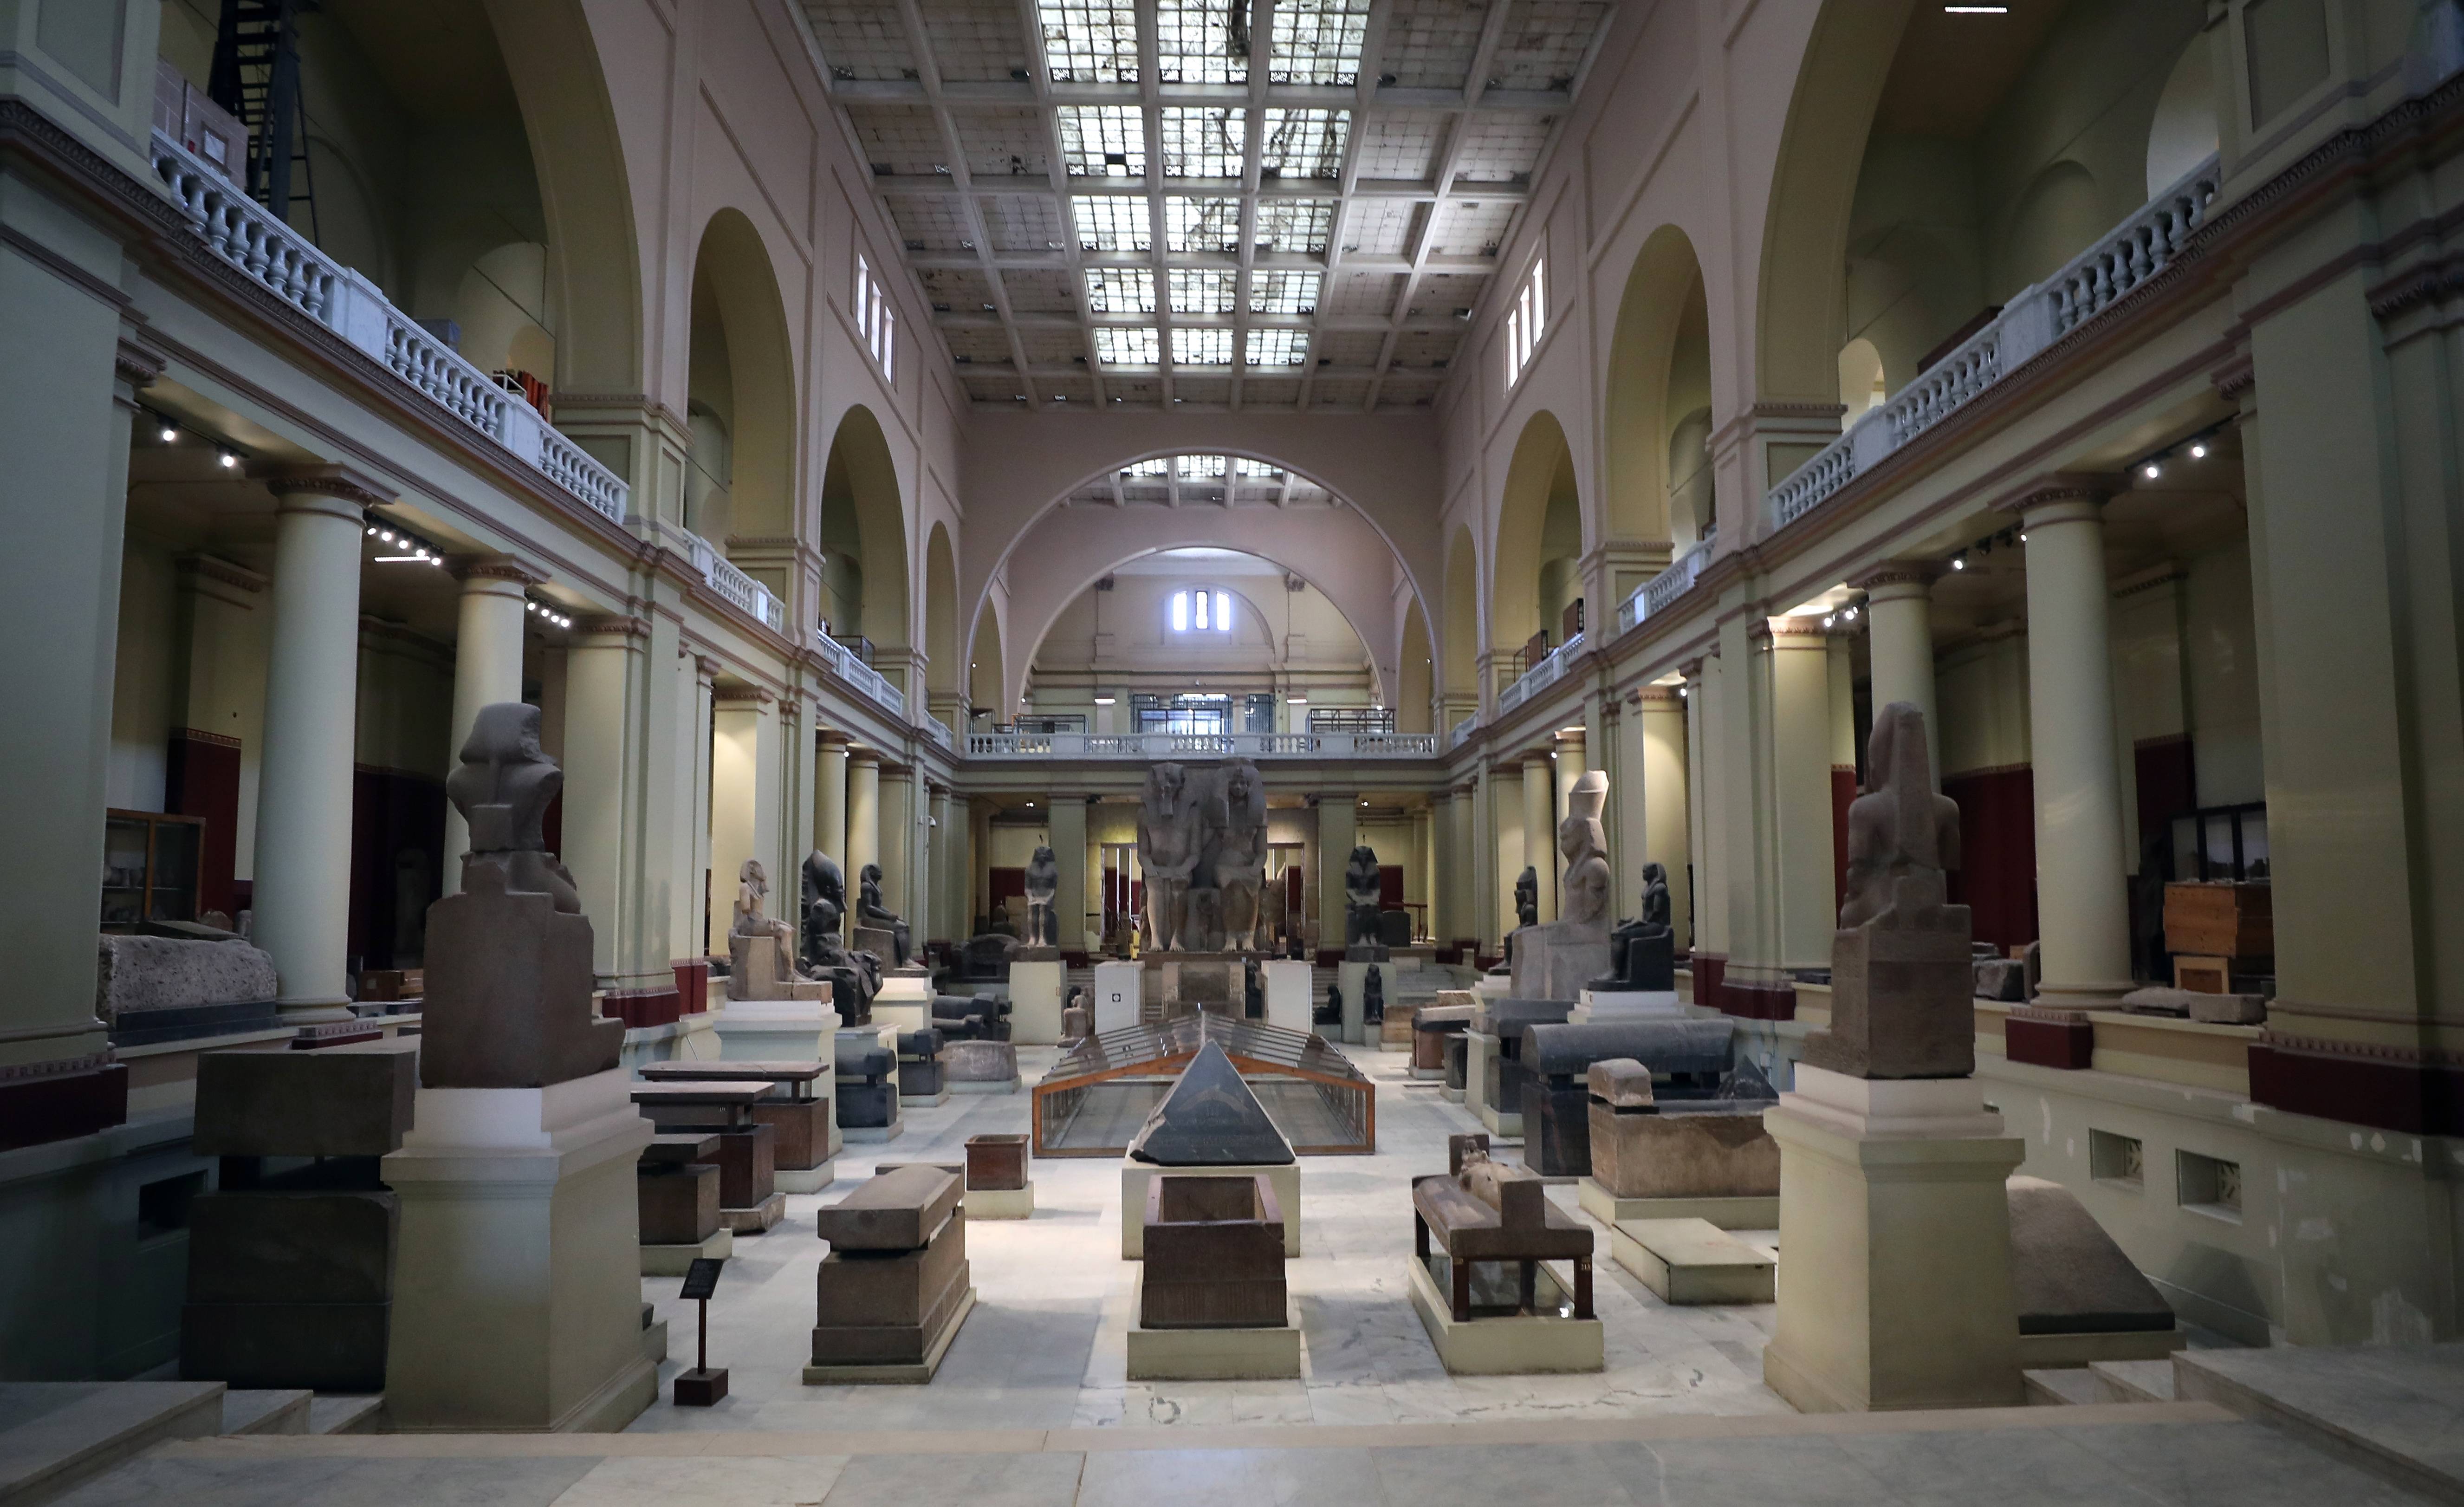 图片展示了一个宽敞的博物馆展厅，内有多件古代雕塑和艺术品，两侧是高大的柱子，顶部是透光天窗。